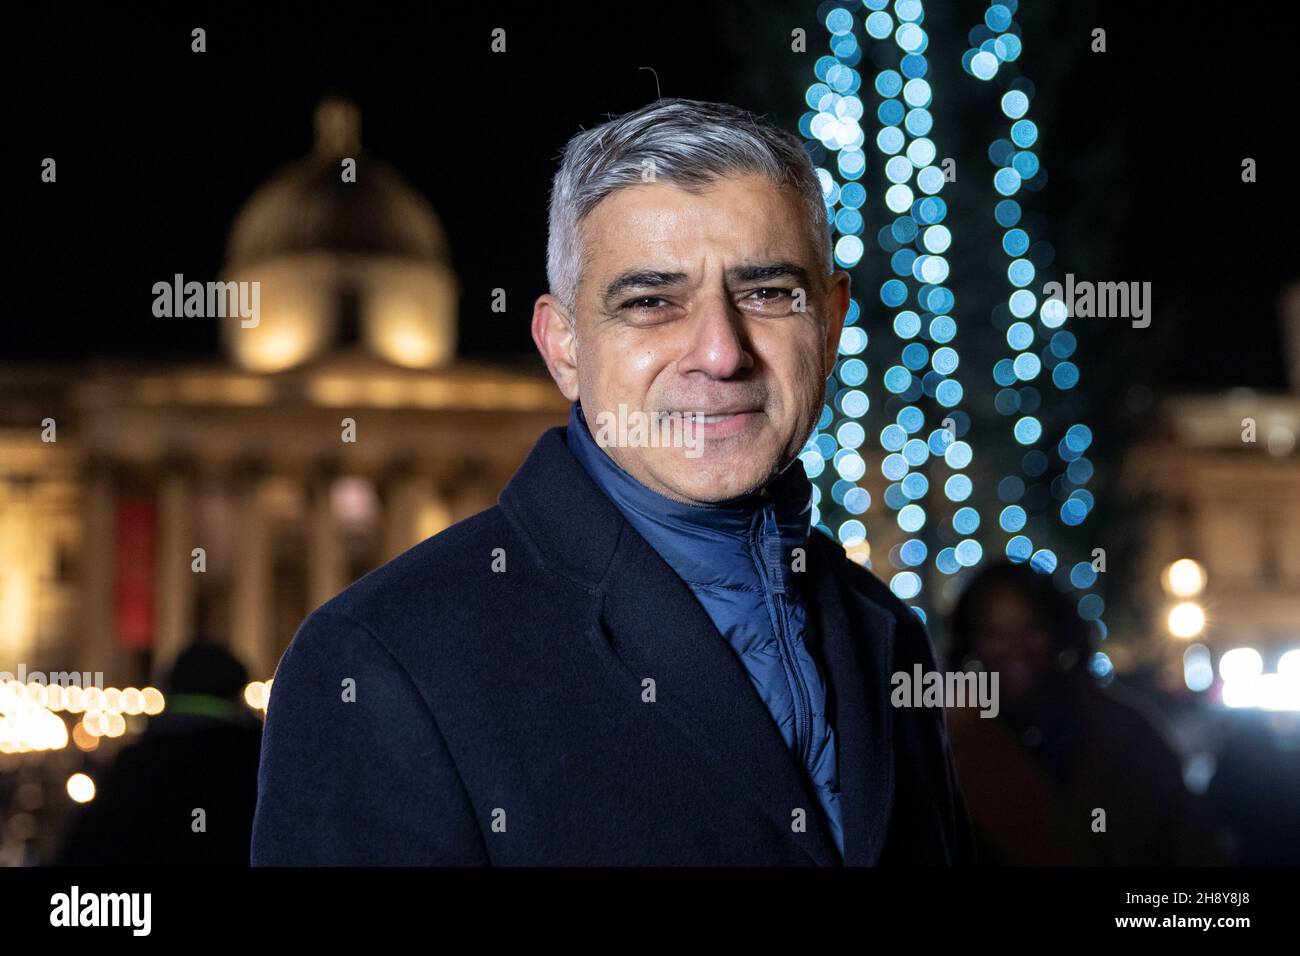 Der Bürgermeister von London, Sadiq Khan, posiert für ein Bild nach der Weihnachtsbaumbeleuchtung am Trafalgar Square, London, Großbritannien, am 2. Dezember 2021. REUTERS/May James Stockfoto